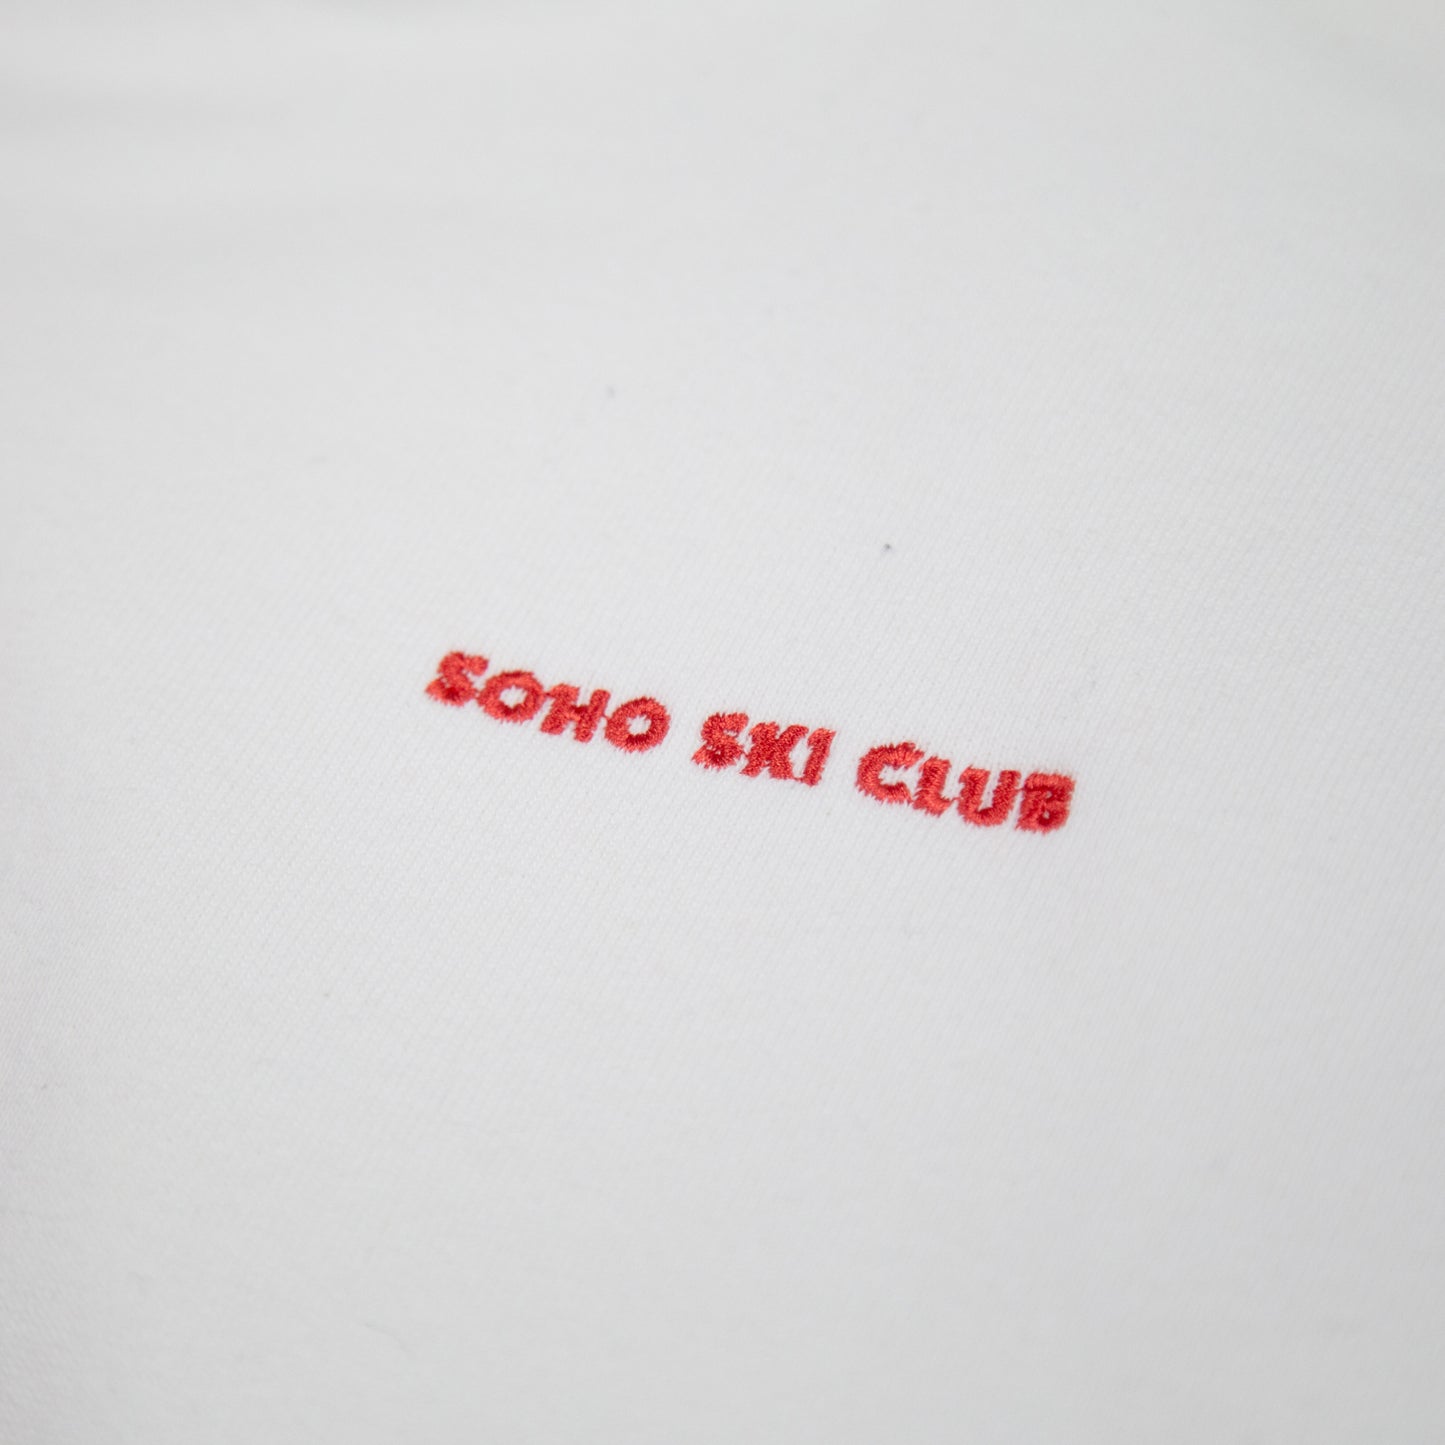 Soho Ski Club Hoodie White